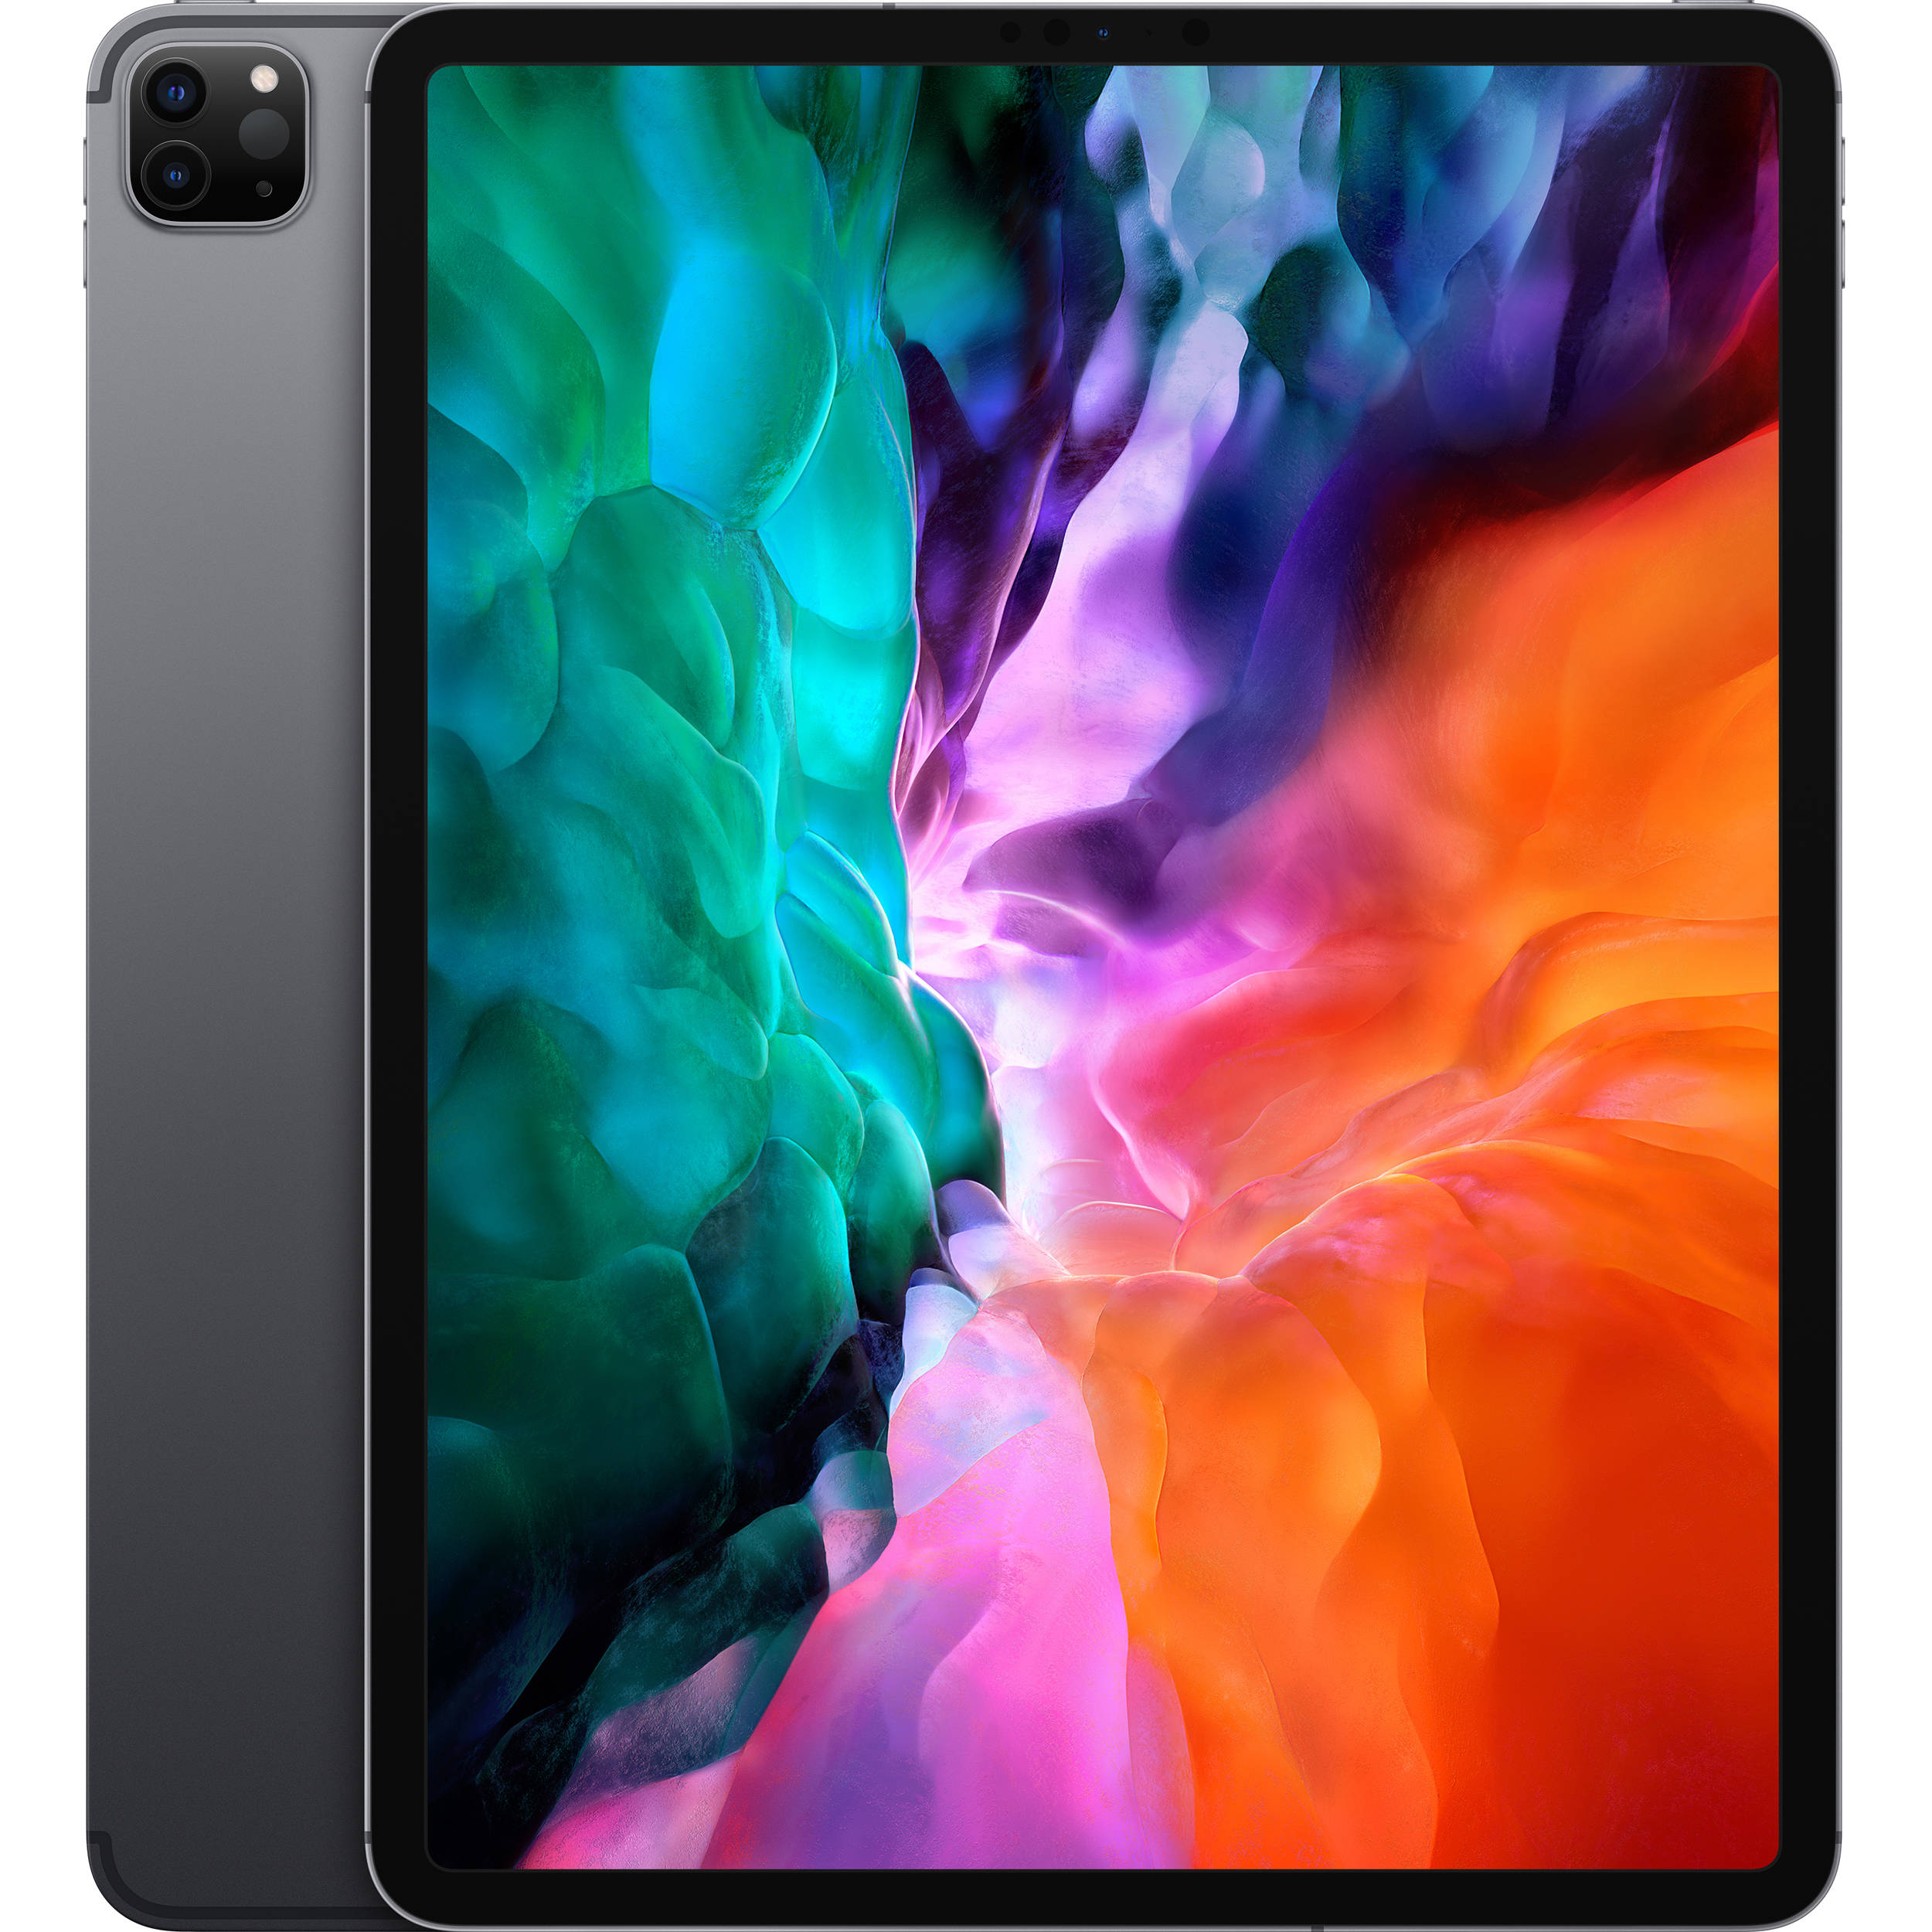 2020 Apple iPad Pro 12.9-inch, Wi-Fi, 1TB - Space Grey - MXAX2LL/A - New